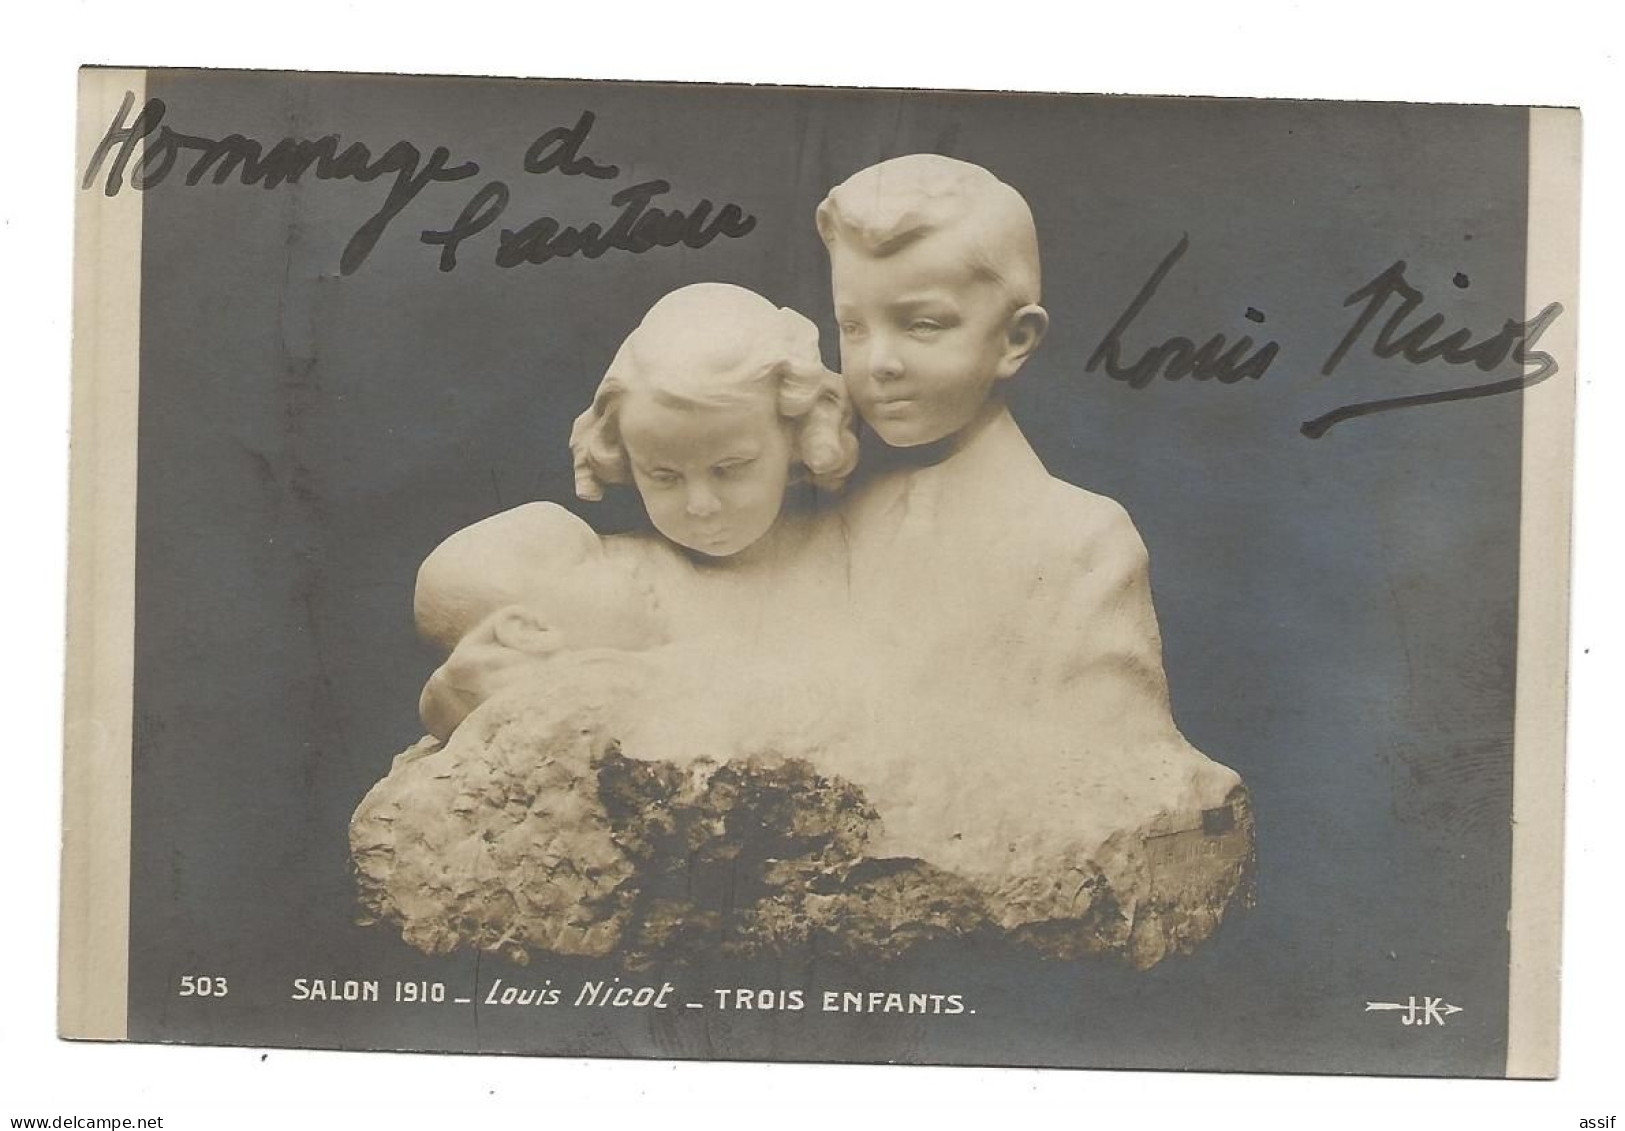 Louis Nicot Salon 1910 Trois Enfants Autographe - Sculptures